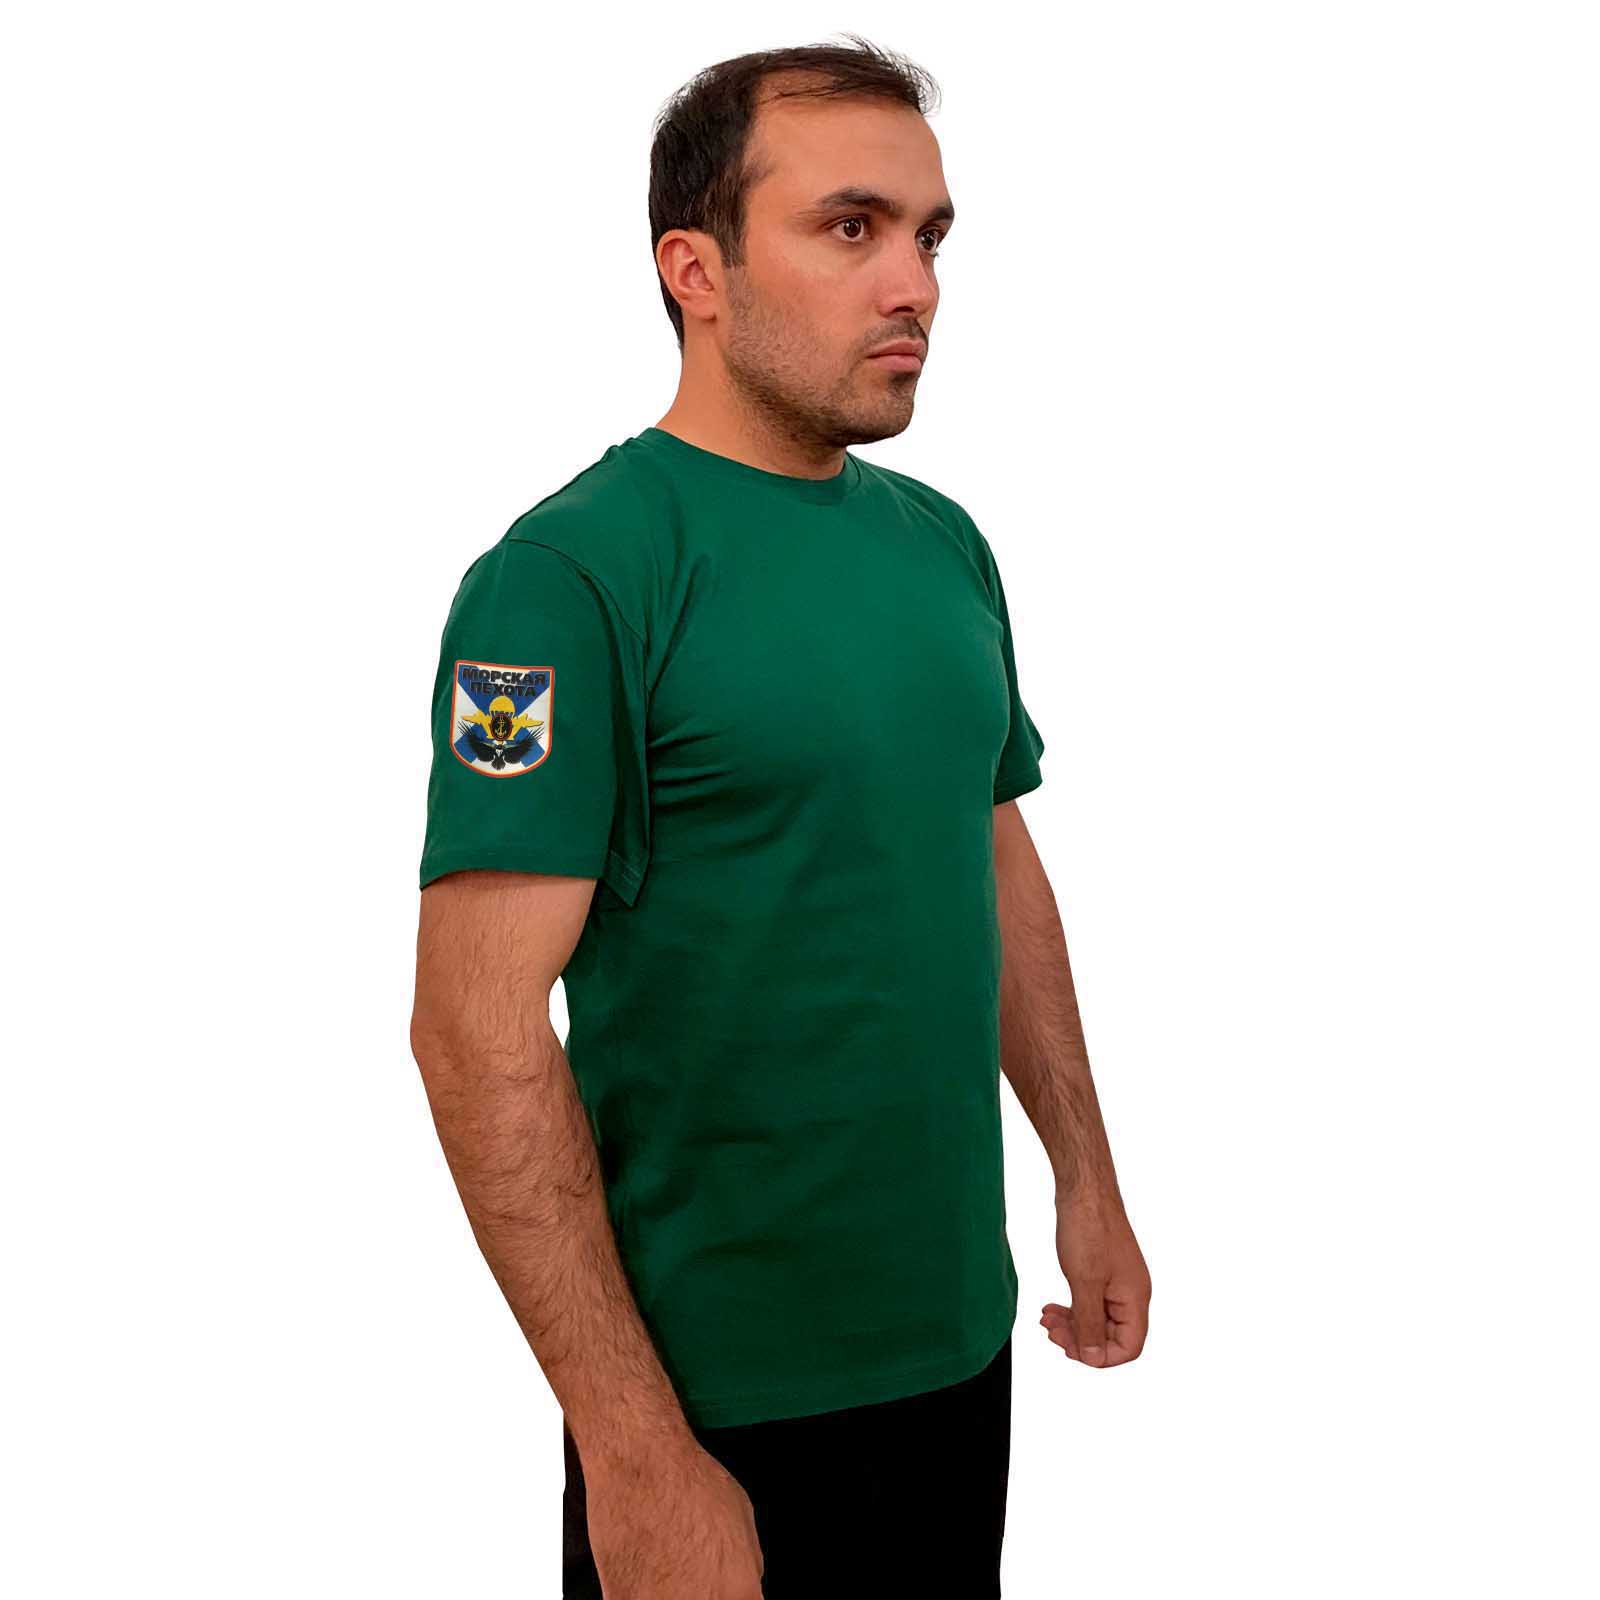 Зелёная футболка с термопринтом "Морская пехота" на рукаве